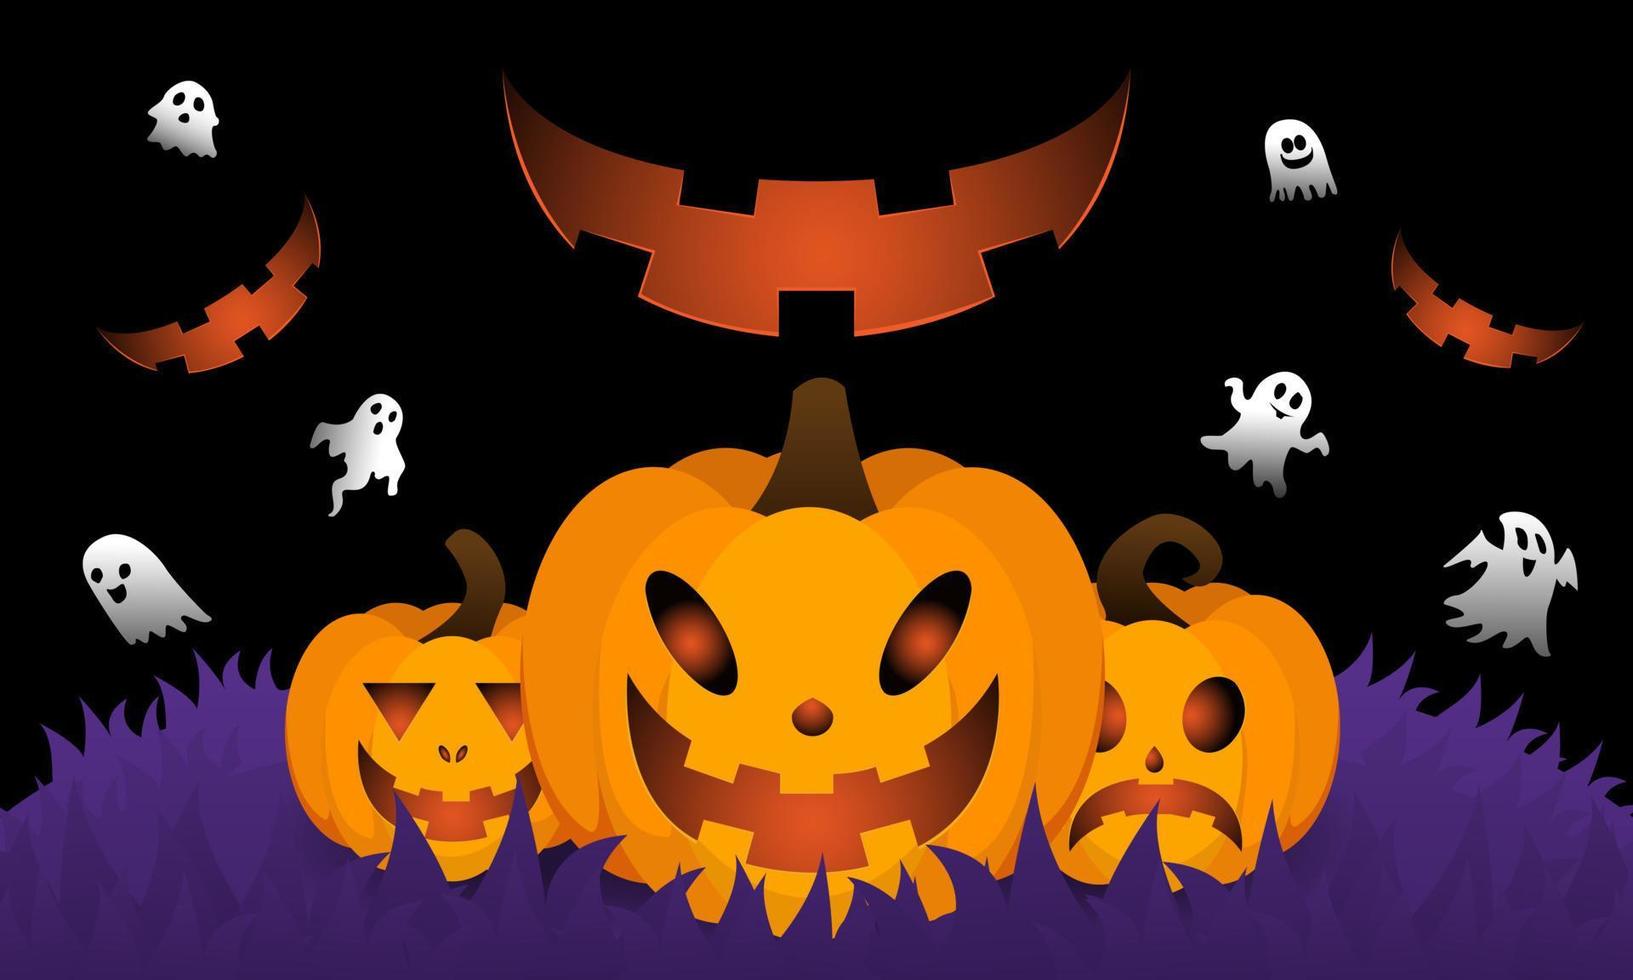 Halloween-Hintergrund für eine Party und Verkauf an Halloween-Nacht. Happy Halloween-Banner. vektor